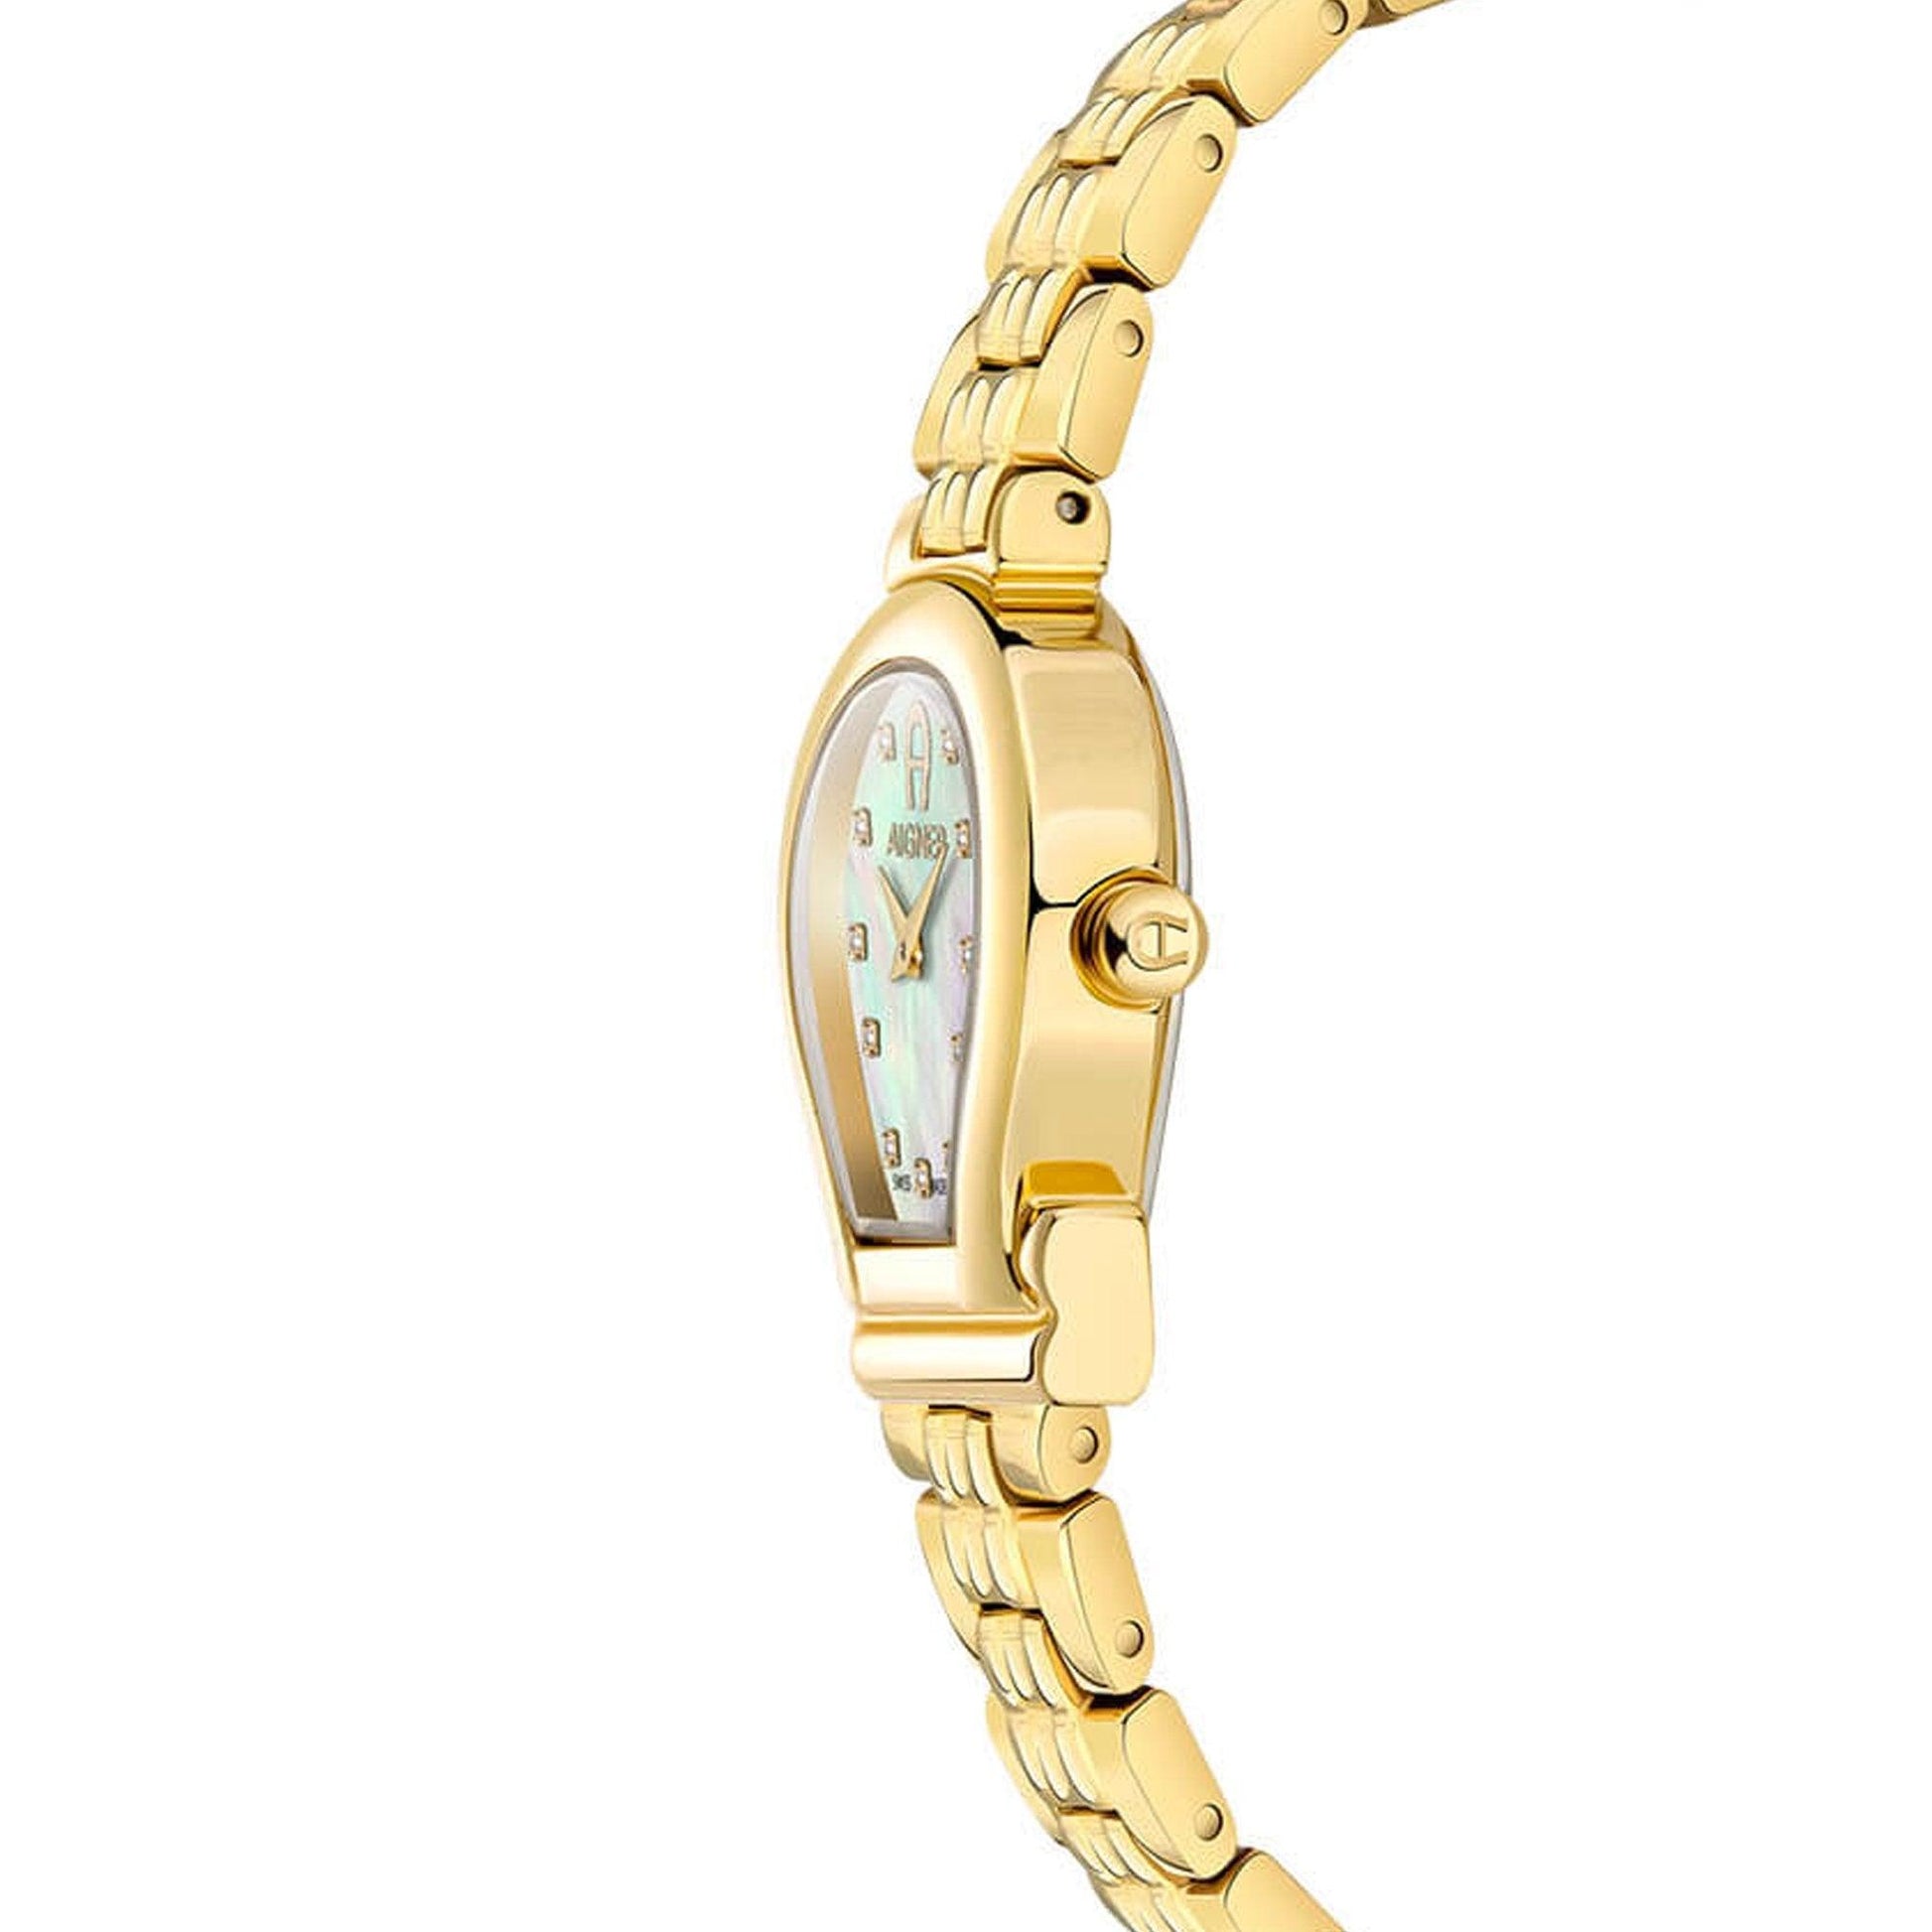 Aigner Tivoli A167206 orologio donna al quarzo - Kechiq Concept Boutique